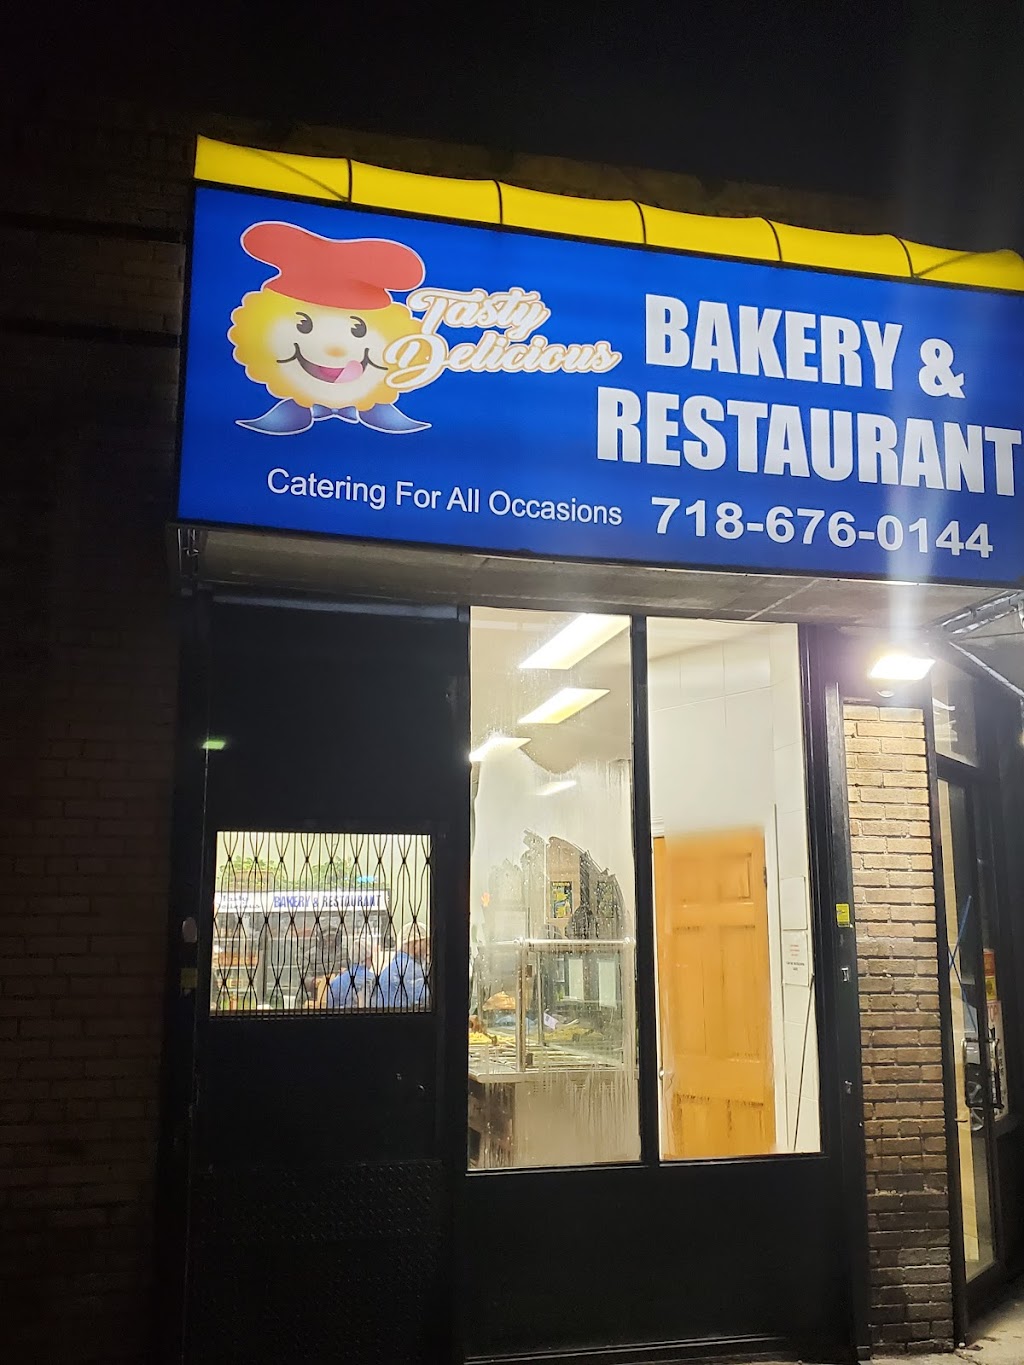 Tasty Delicious Bakery & Restaurant | 9001 Avenue A, Brooklyn, NY 11236 | Phone: (718) 676-0144